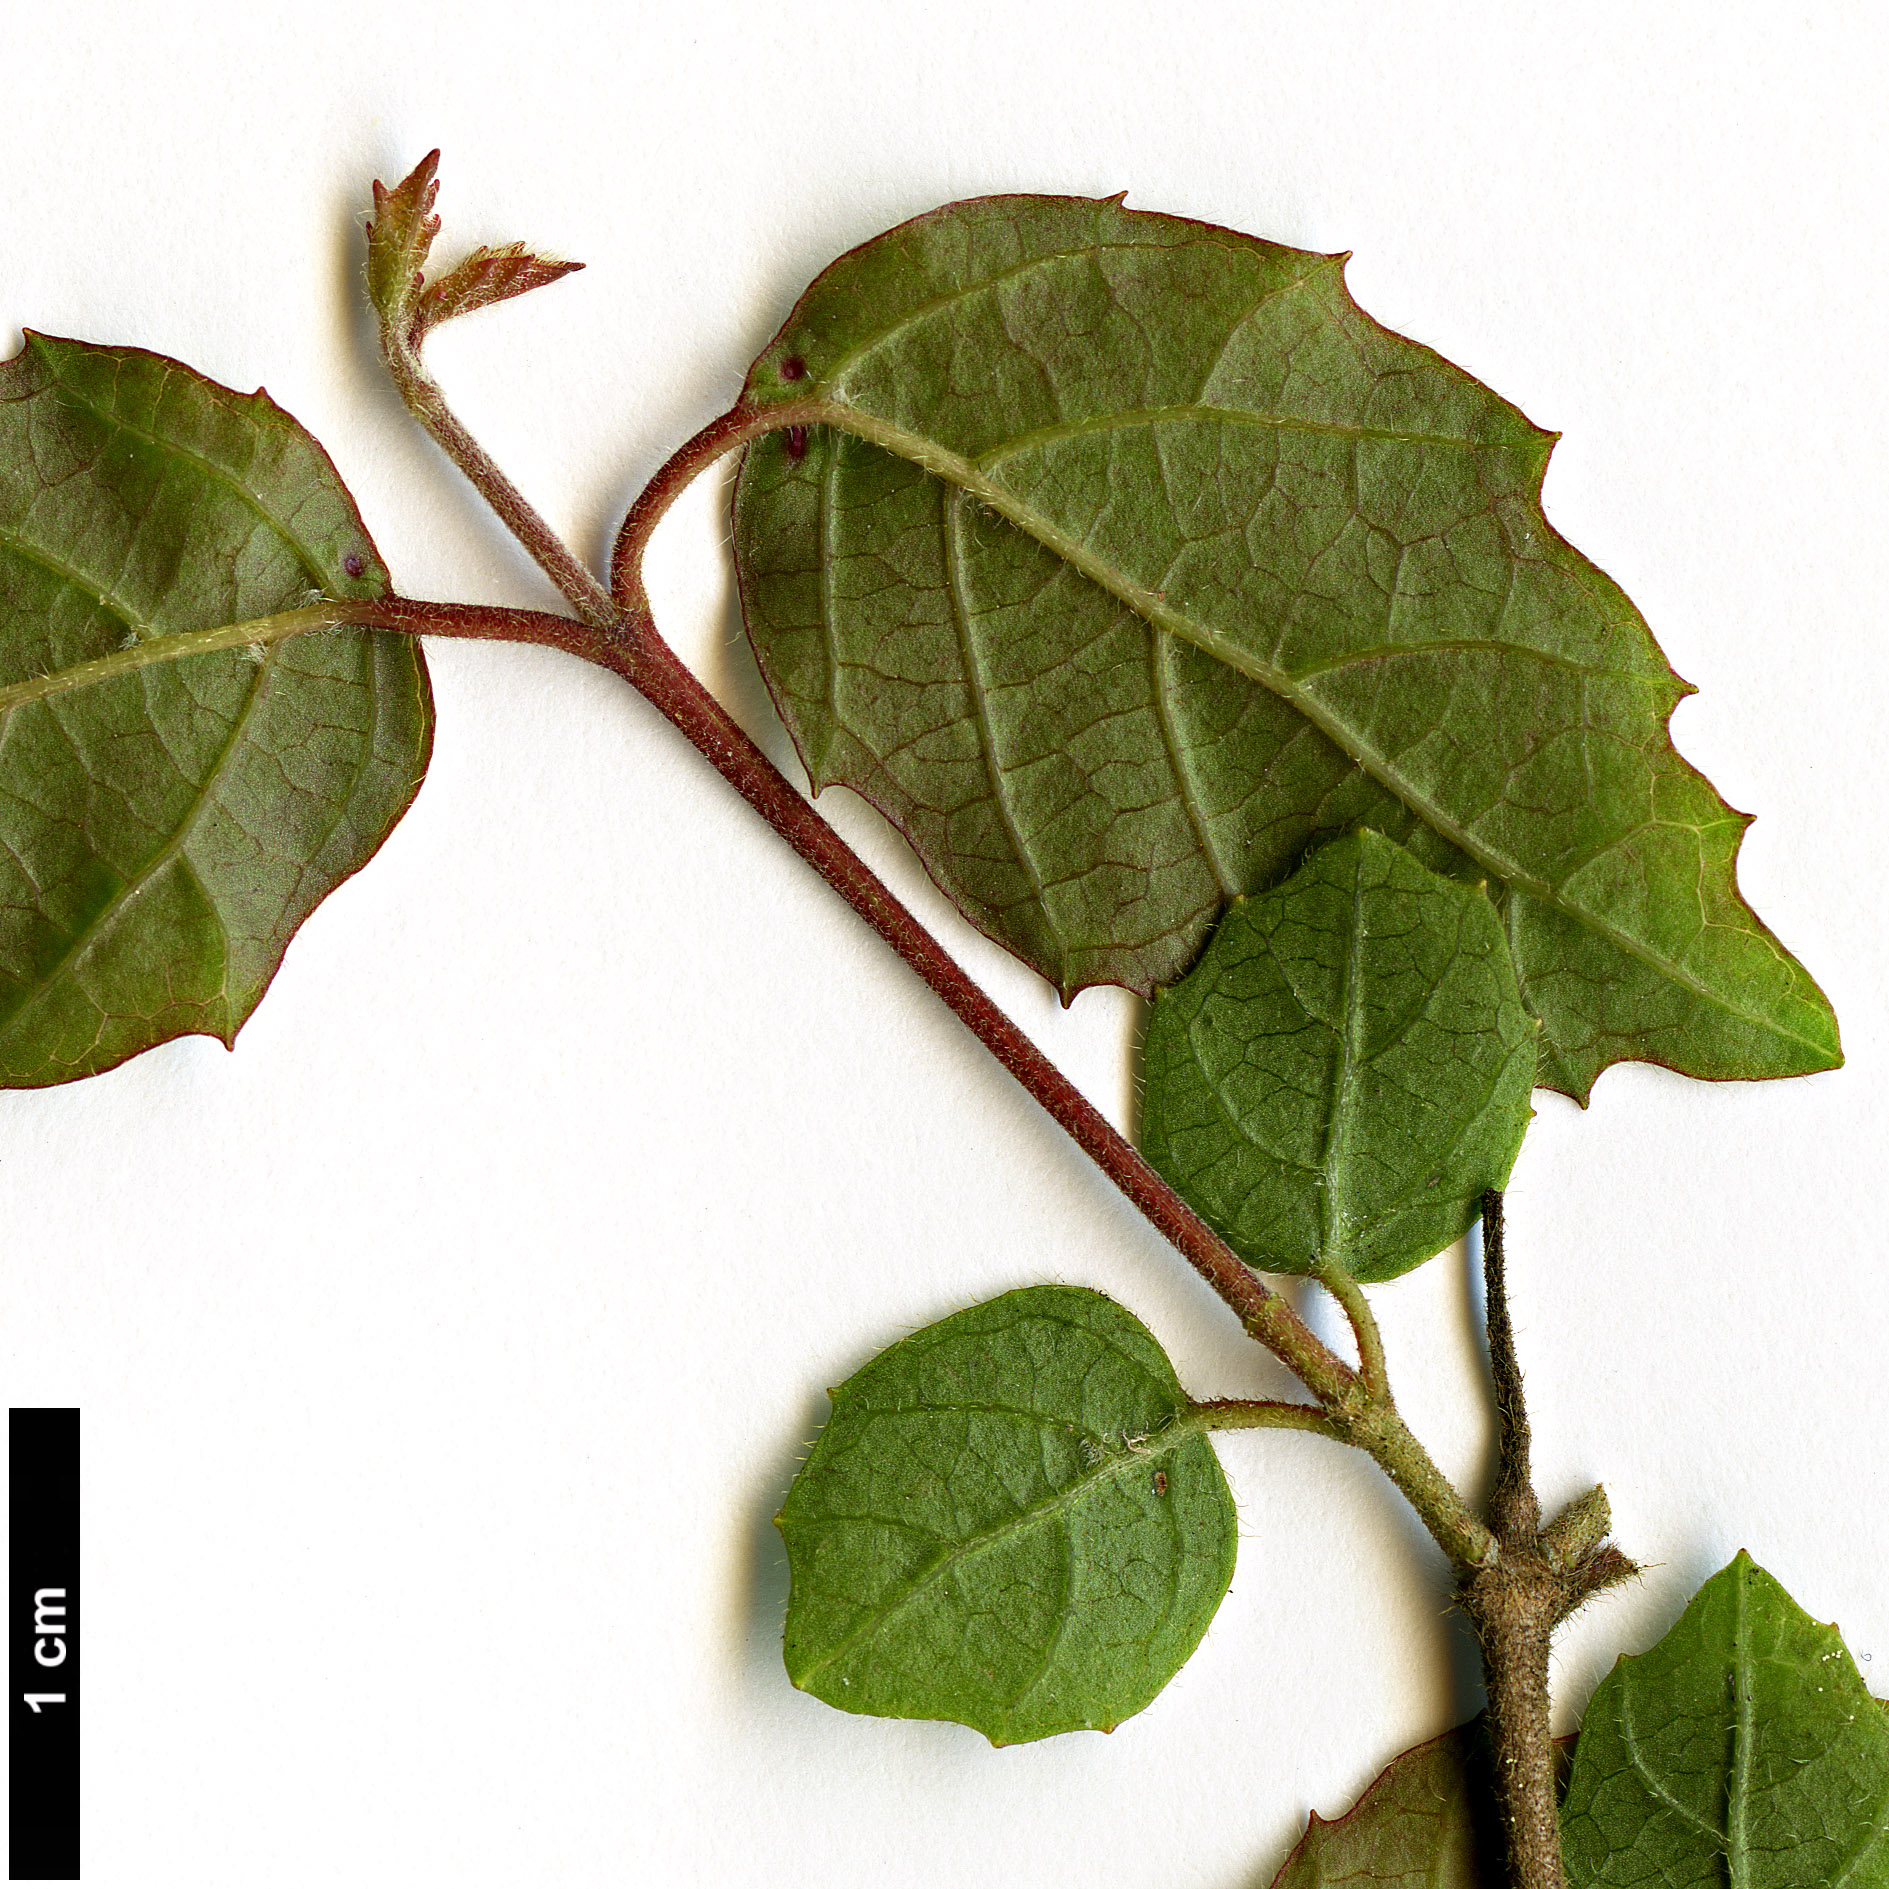 High resolution image: Family: Adoxaceae - Genus: Viburnum - Taxon: luzonicum